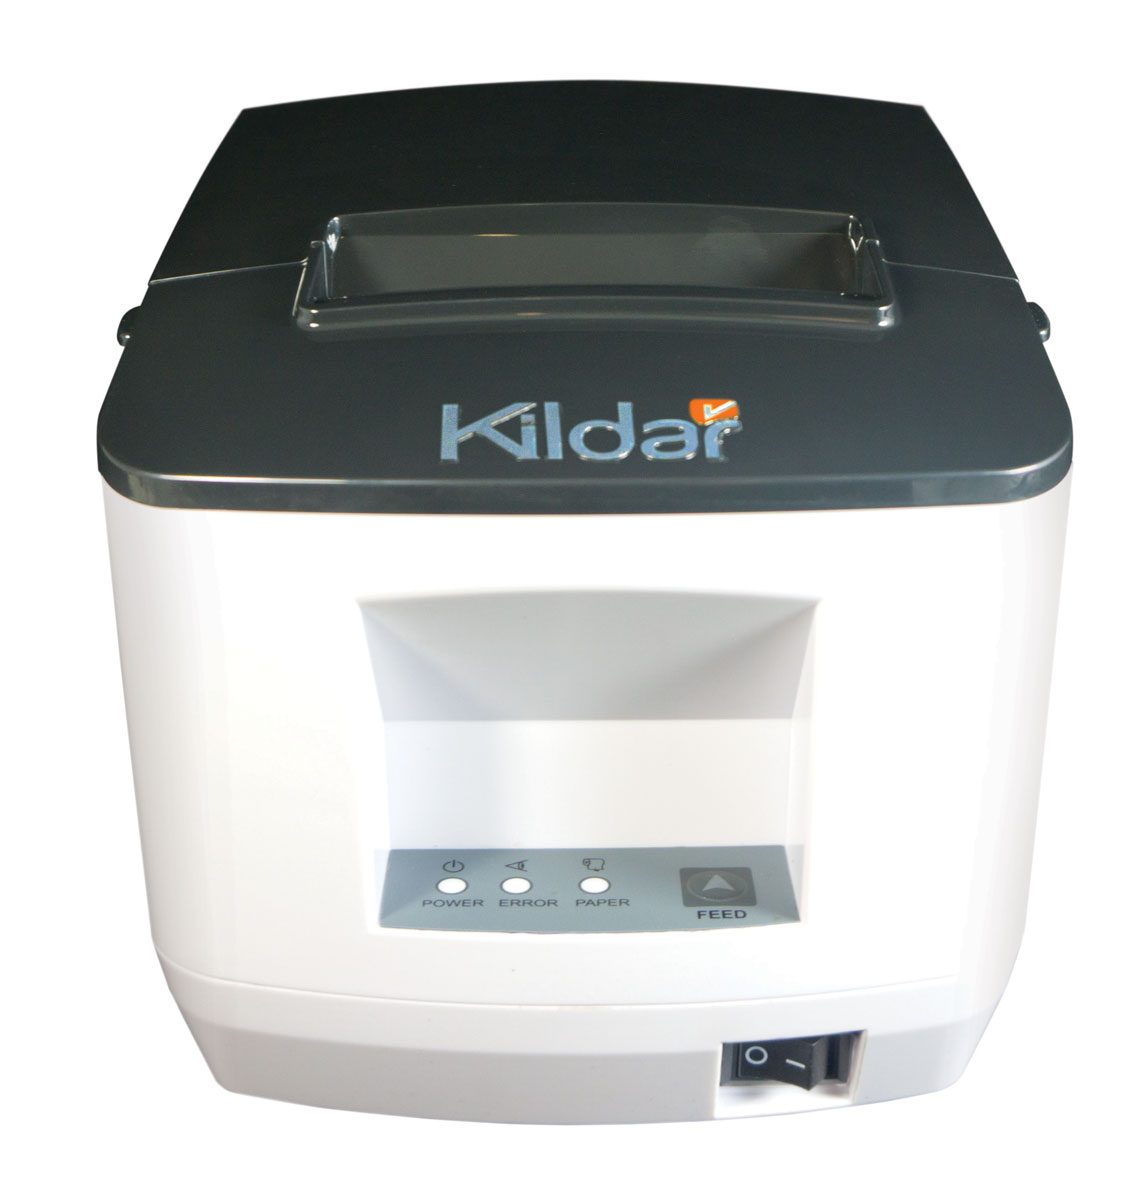 KILDAR - DataPrint I8071 - Left Side